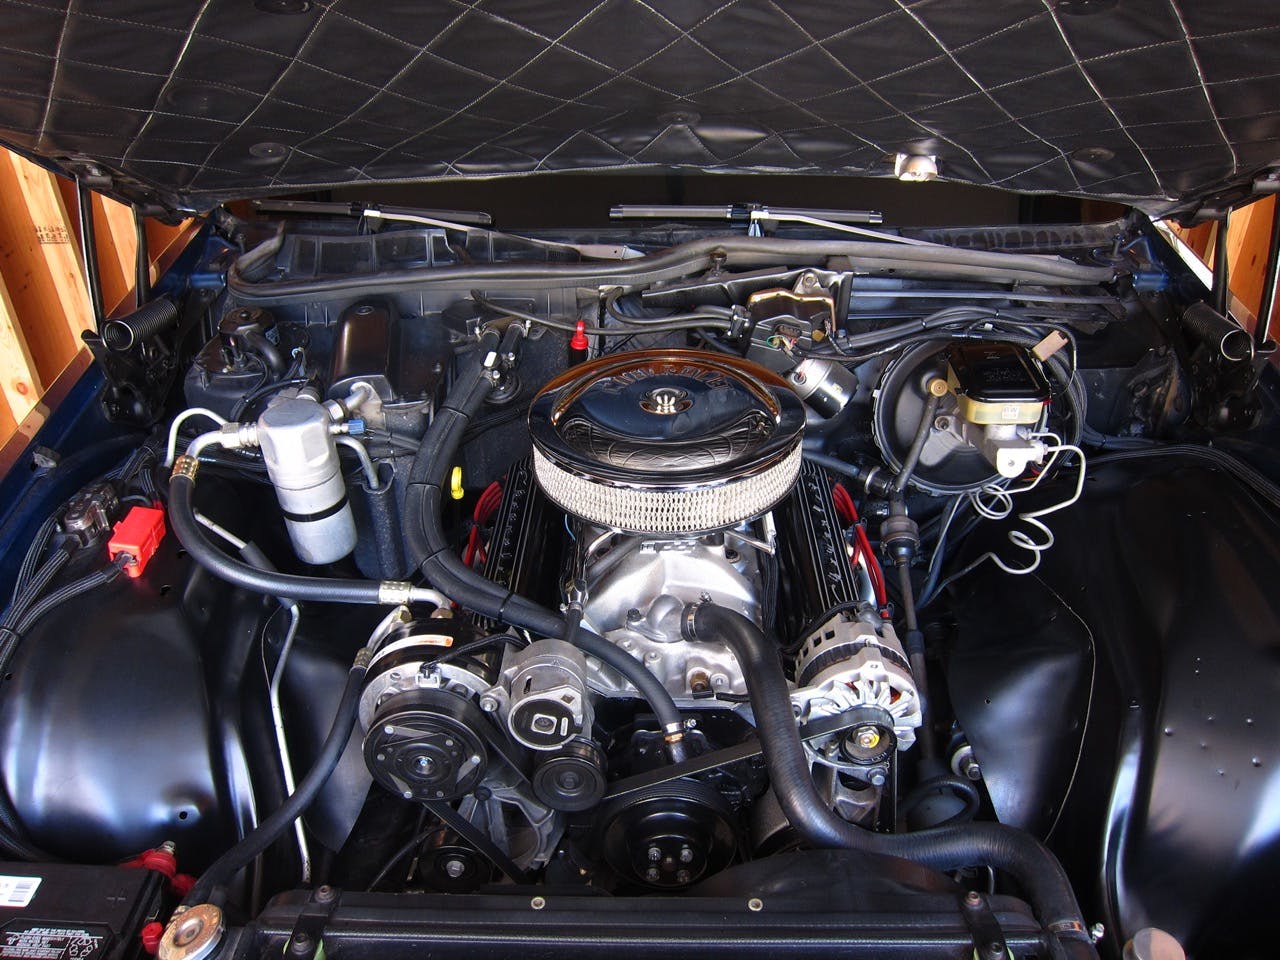 1988 Chevy Caprice 9C1 underhood shiny